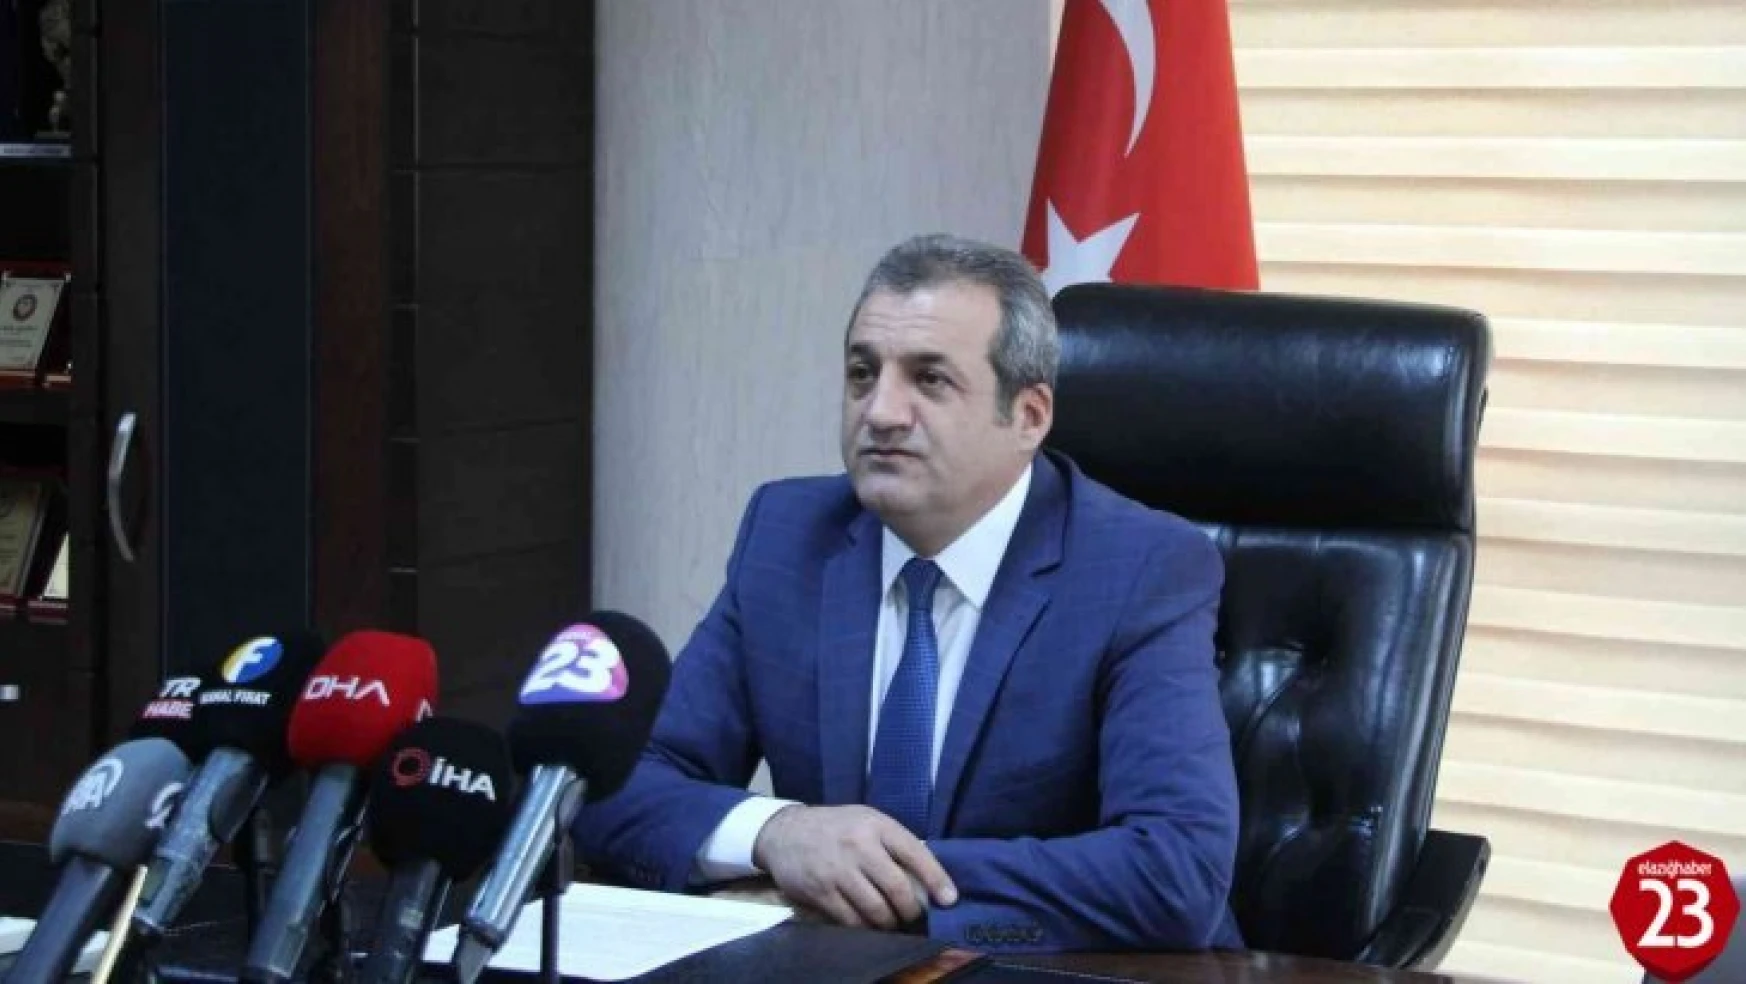 İl Sağlık Müdürü Prof. Dr. Polat, 'Elazığ'da herhangi bir Omicron vakası tespit edilmedi'